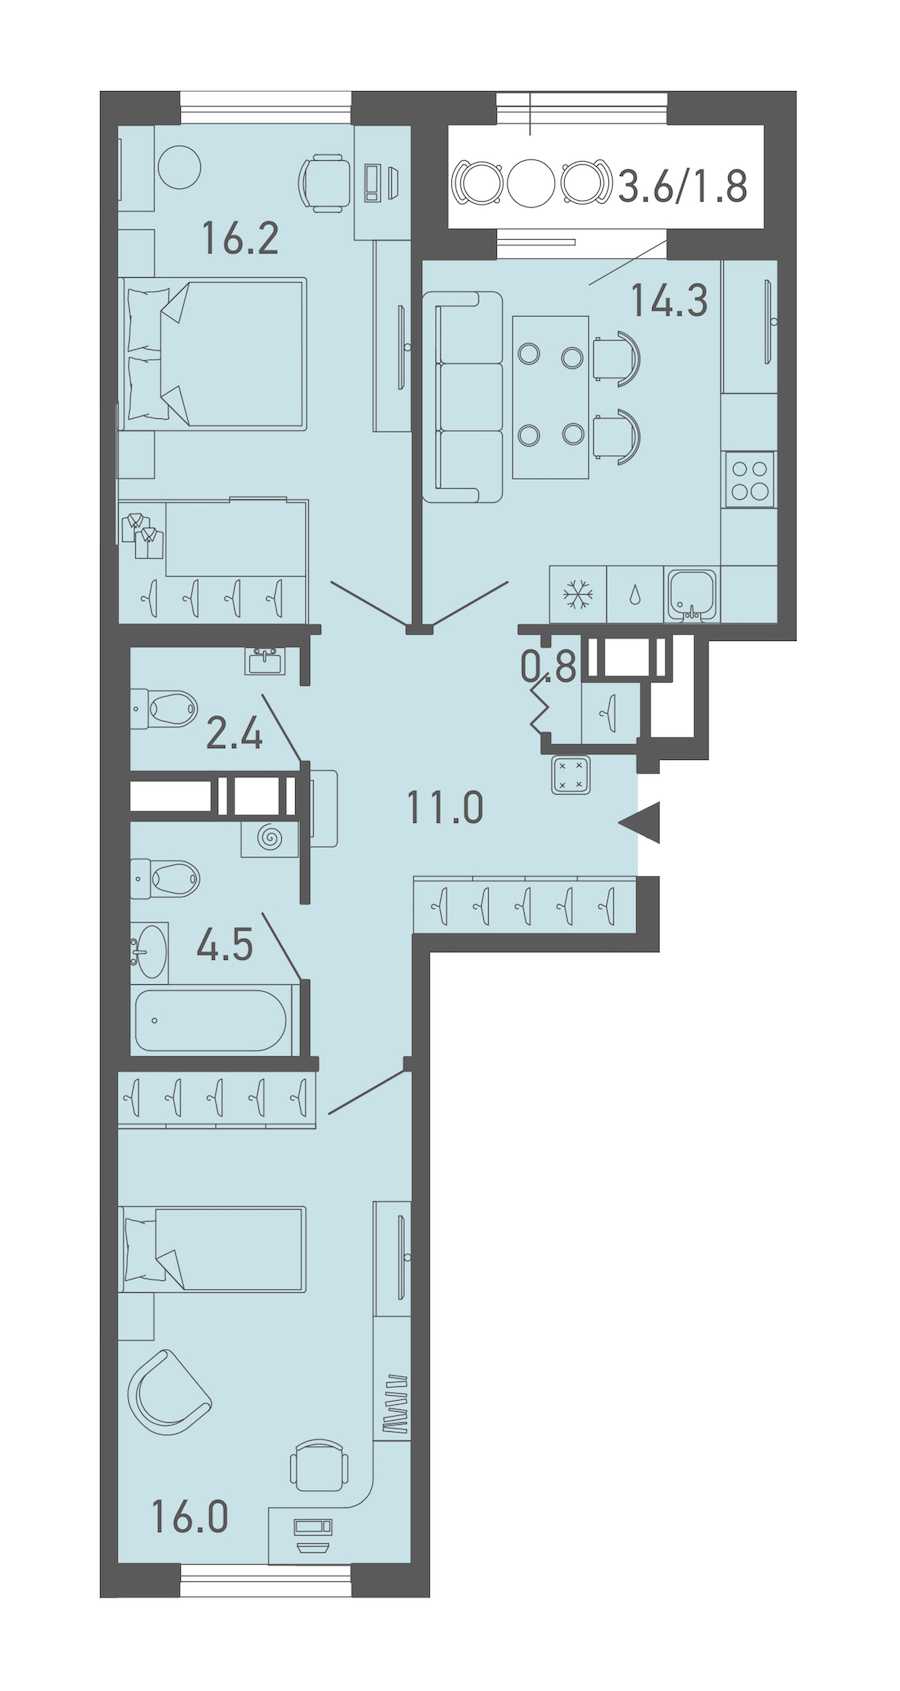 Двухкомнатная квартира в Эталон ЛенСпецСМУ: площадь 67 м2 , этаж: 3 – купить в Санкт-Петербурге